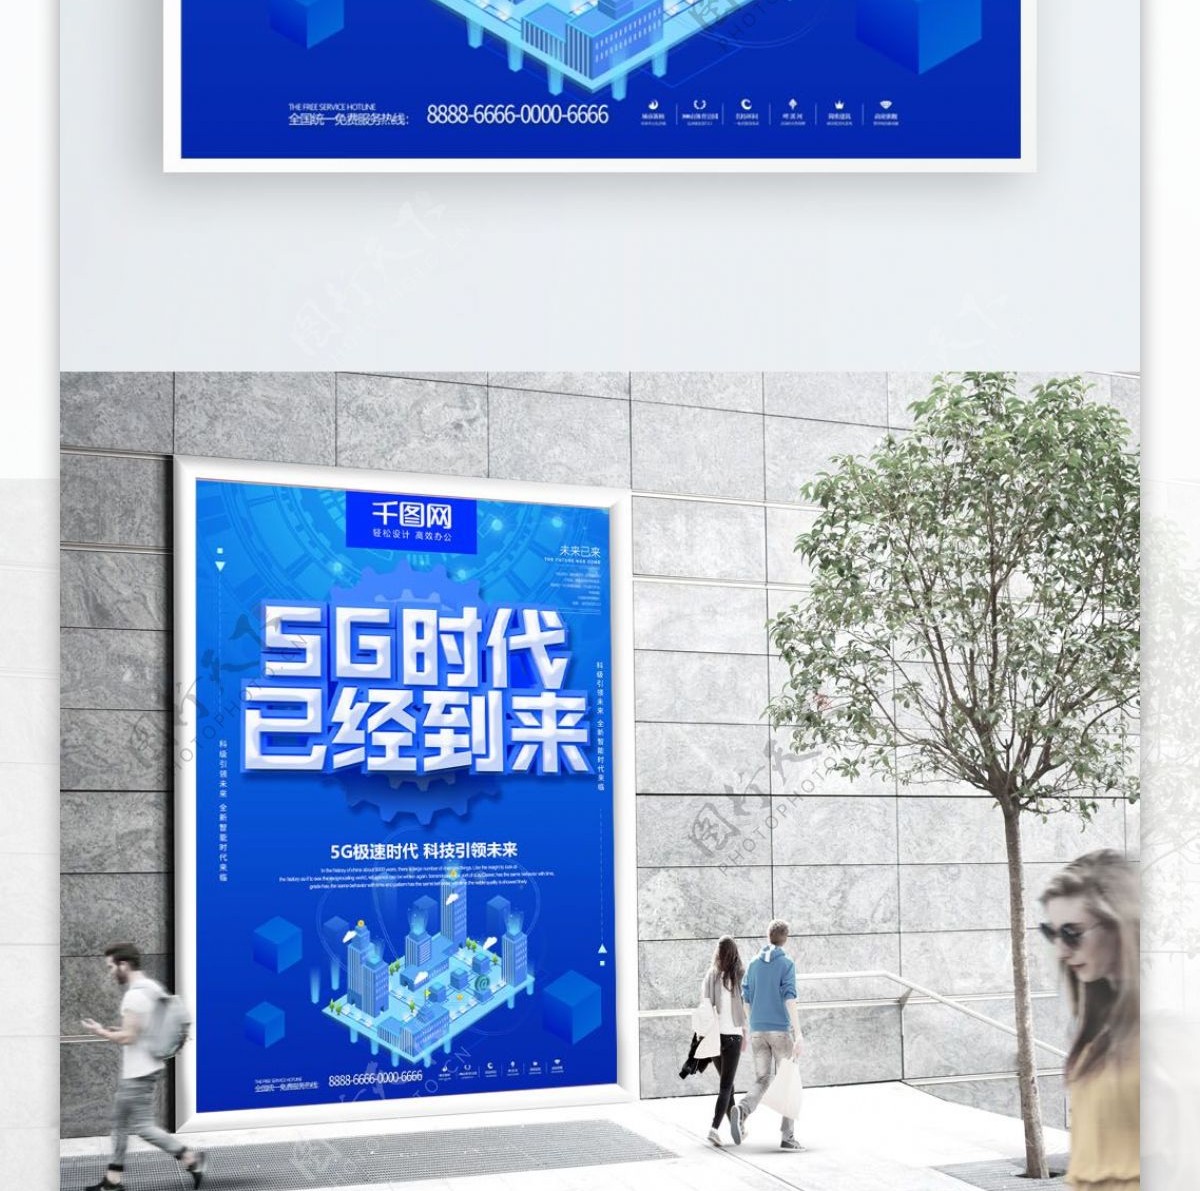 蓝色大气科技感5g时代主题宣传海报